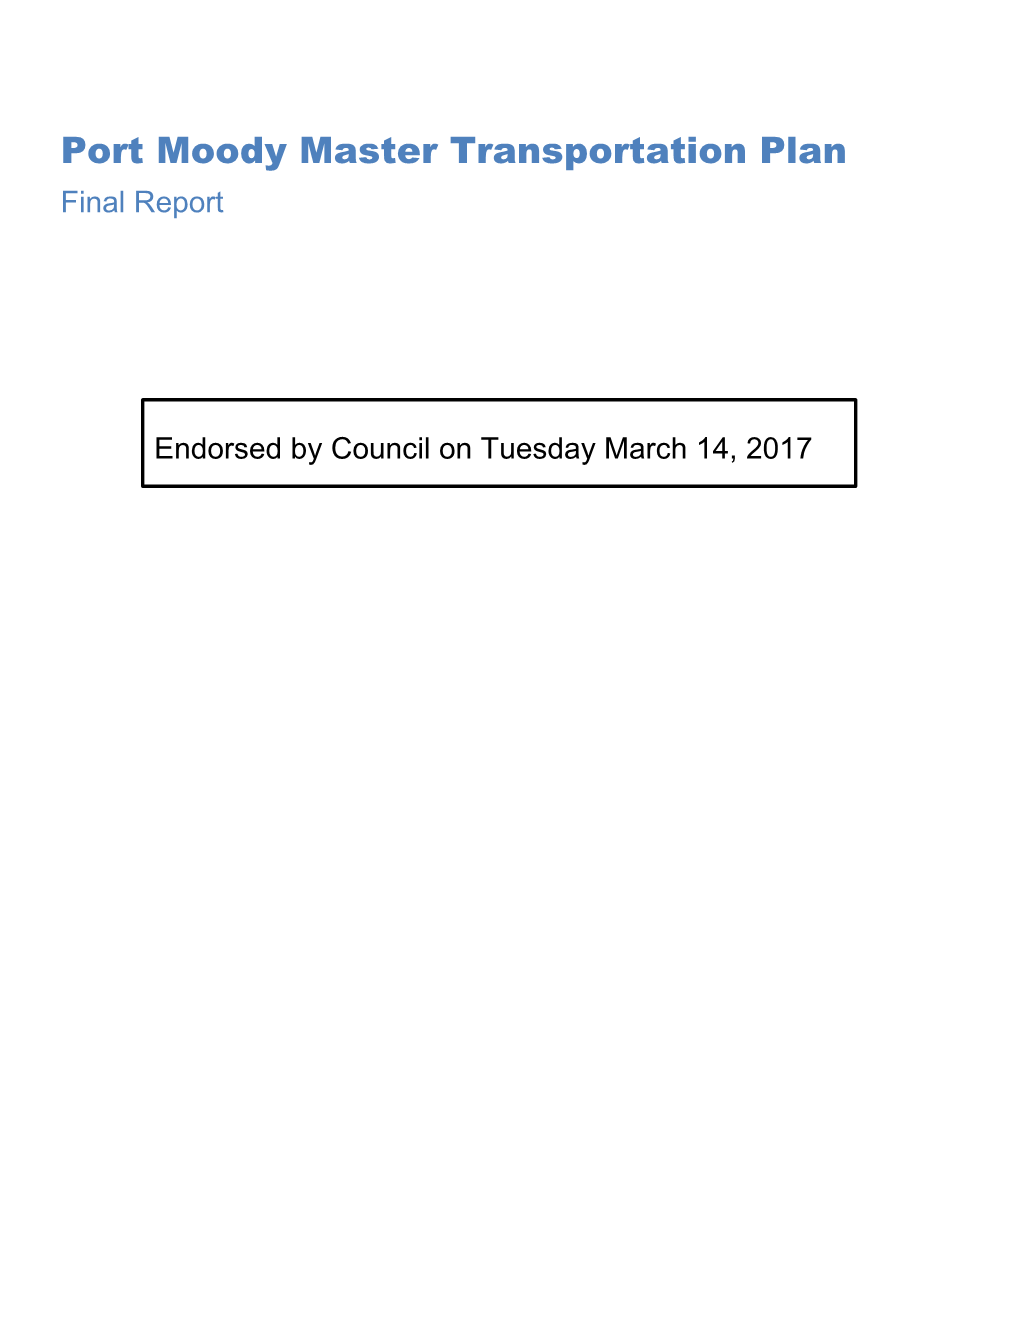 Master Transportation Plan Final Report